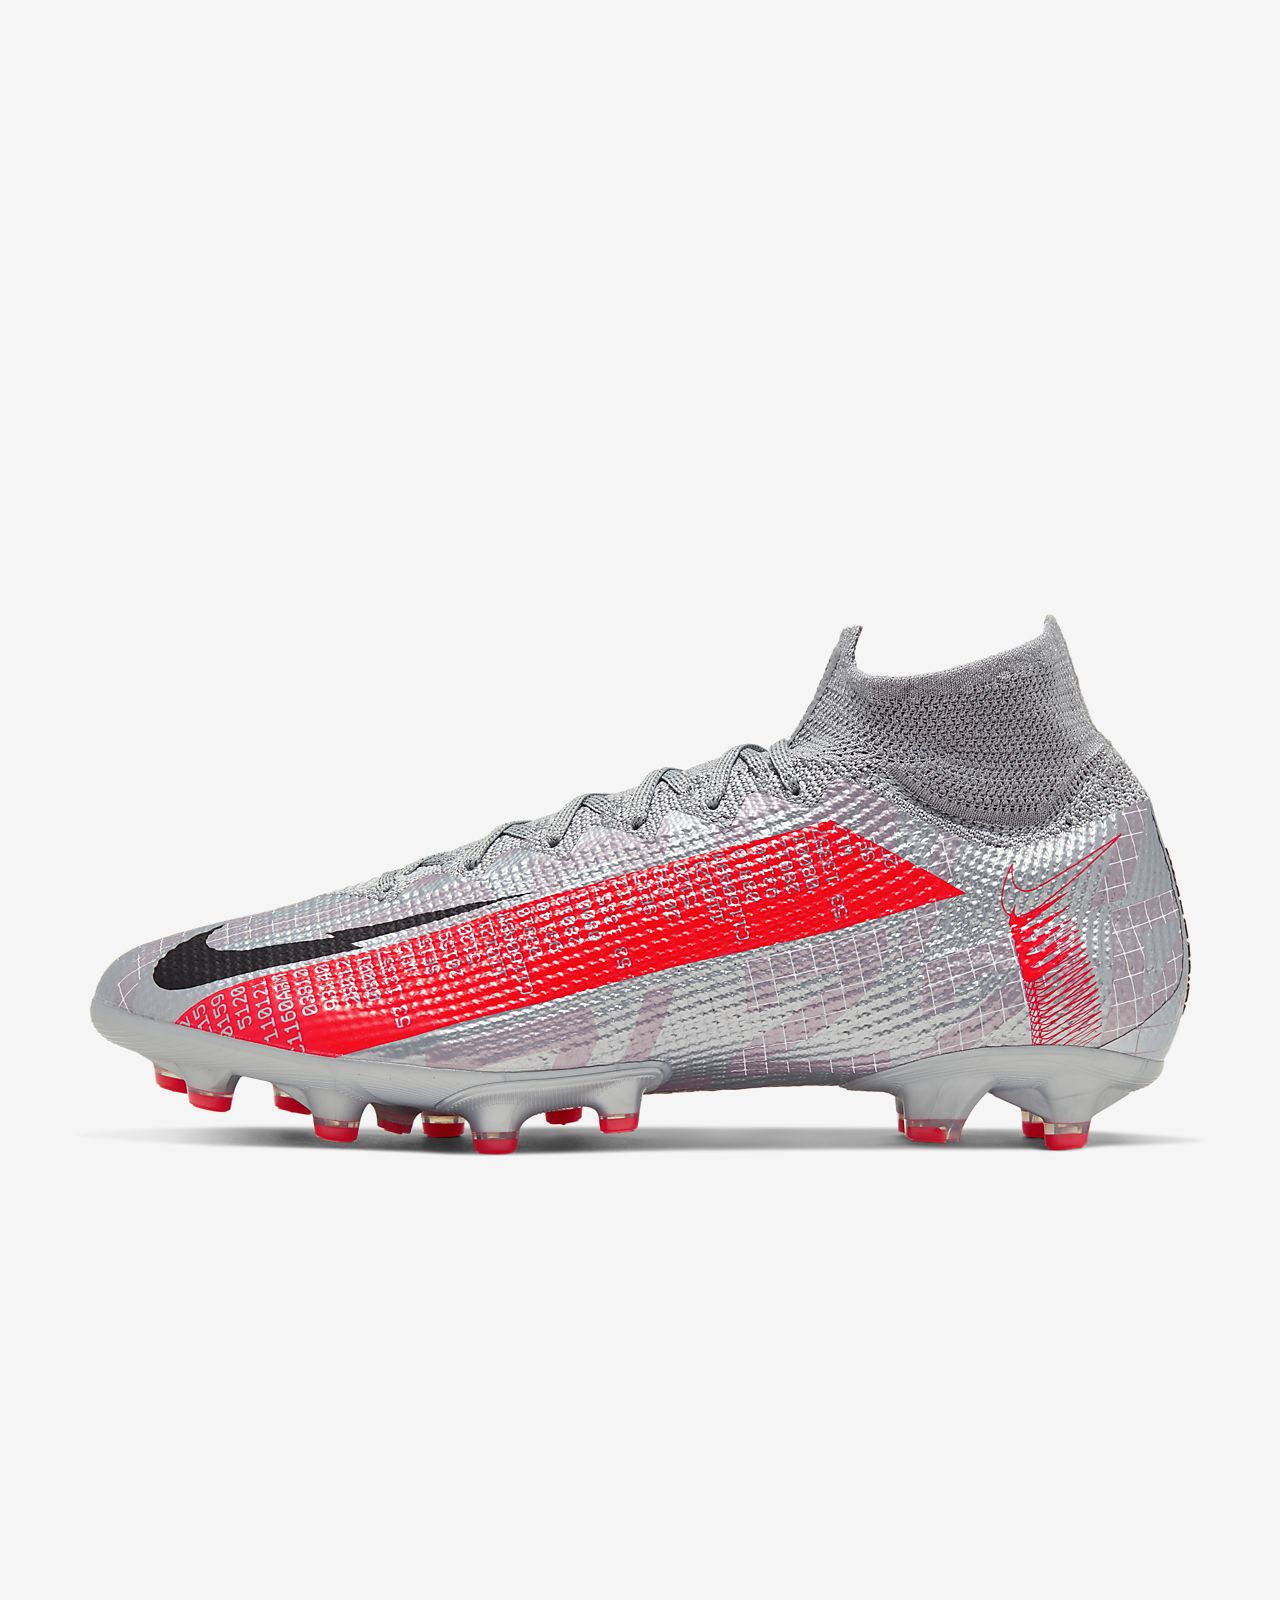 Nike Vapor 12 Pro Njr Fg Football Shoes for Men Buy Online .